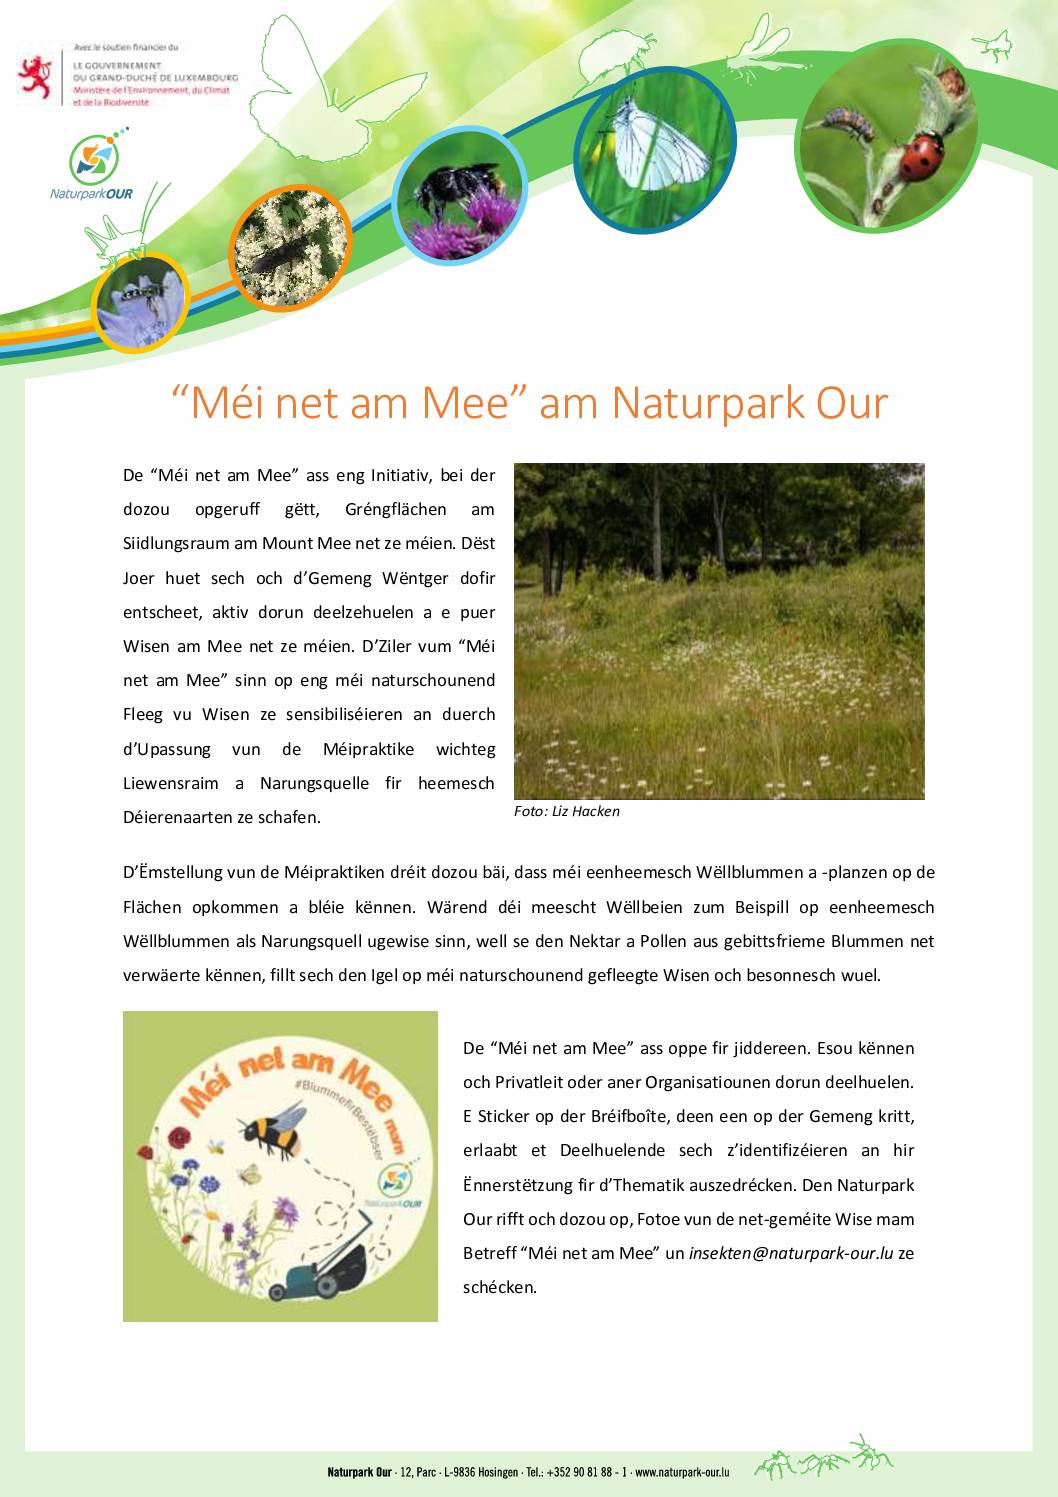 « Méi net am Mee » am Naturpark Our